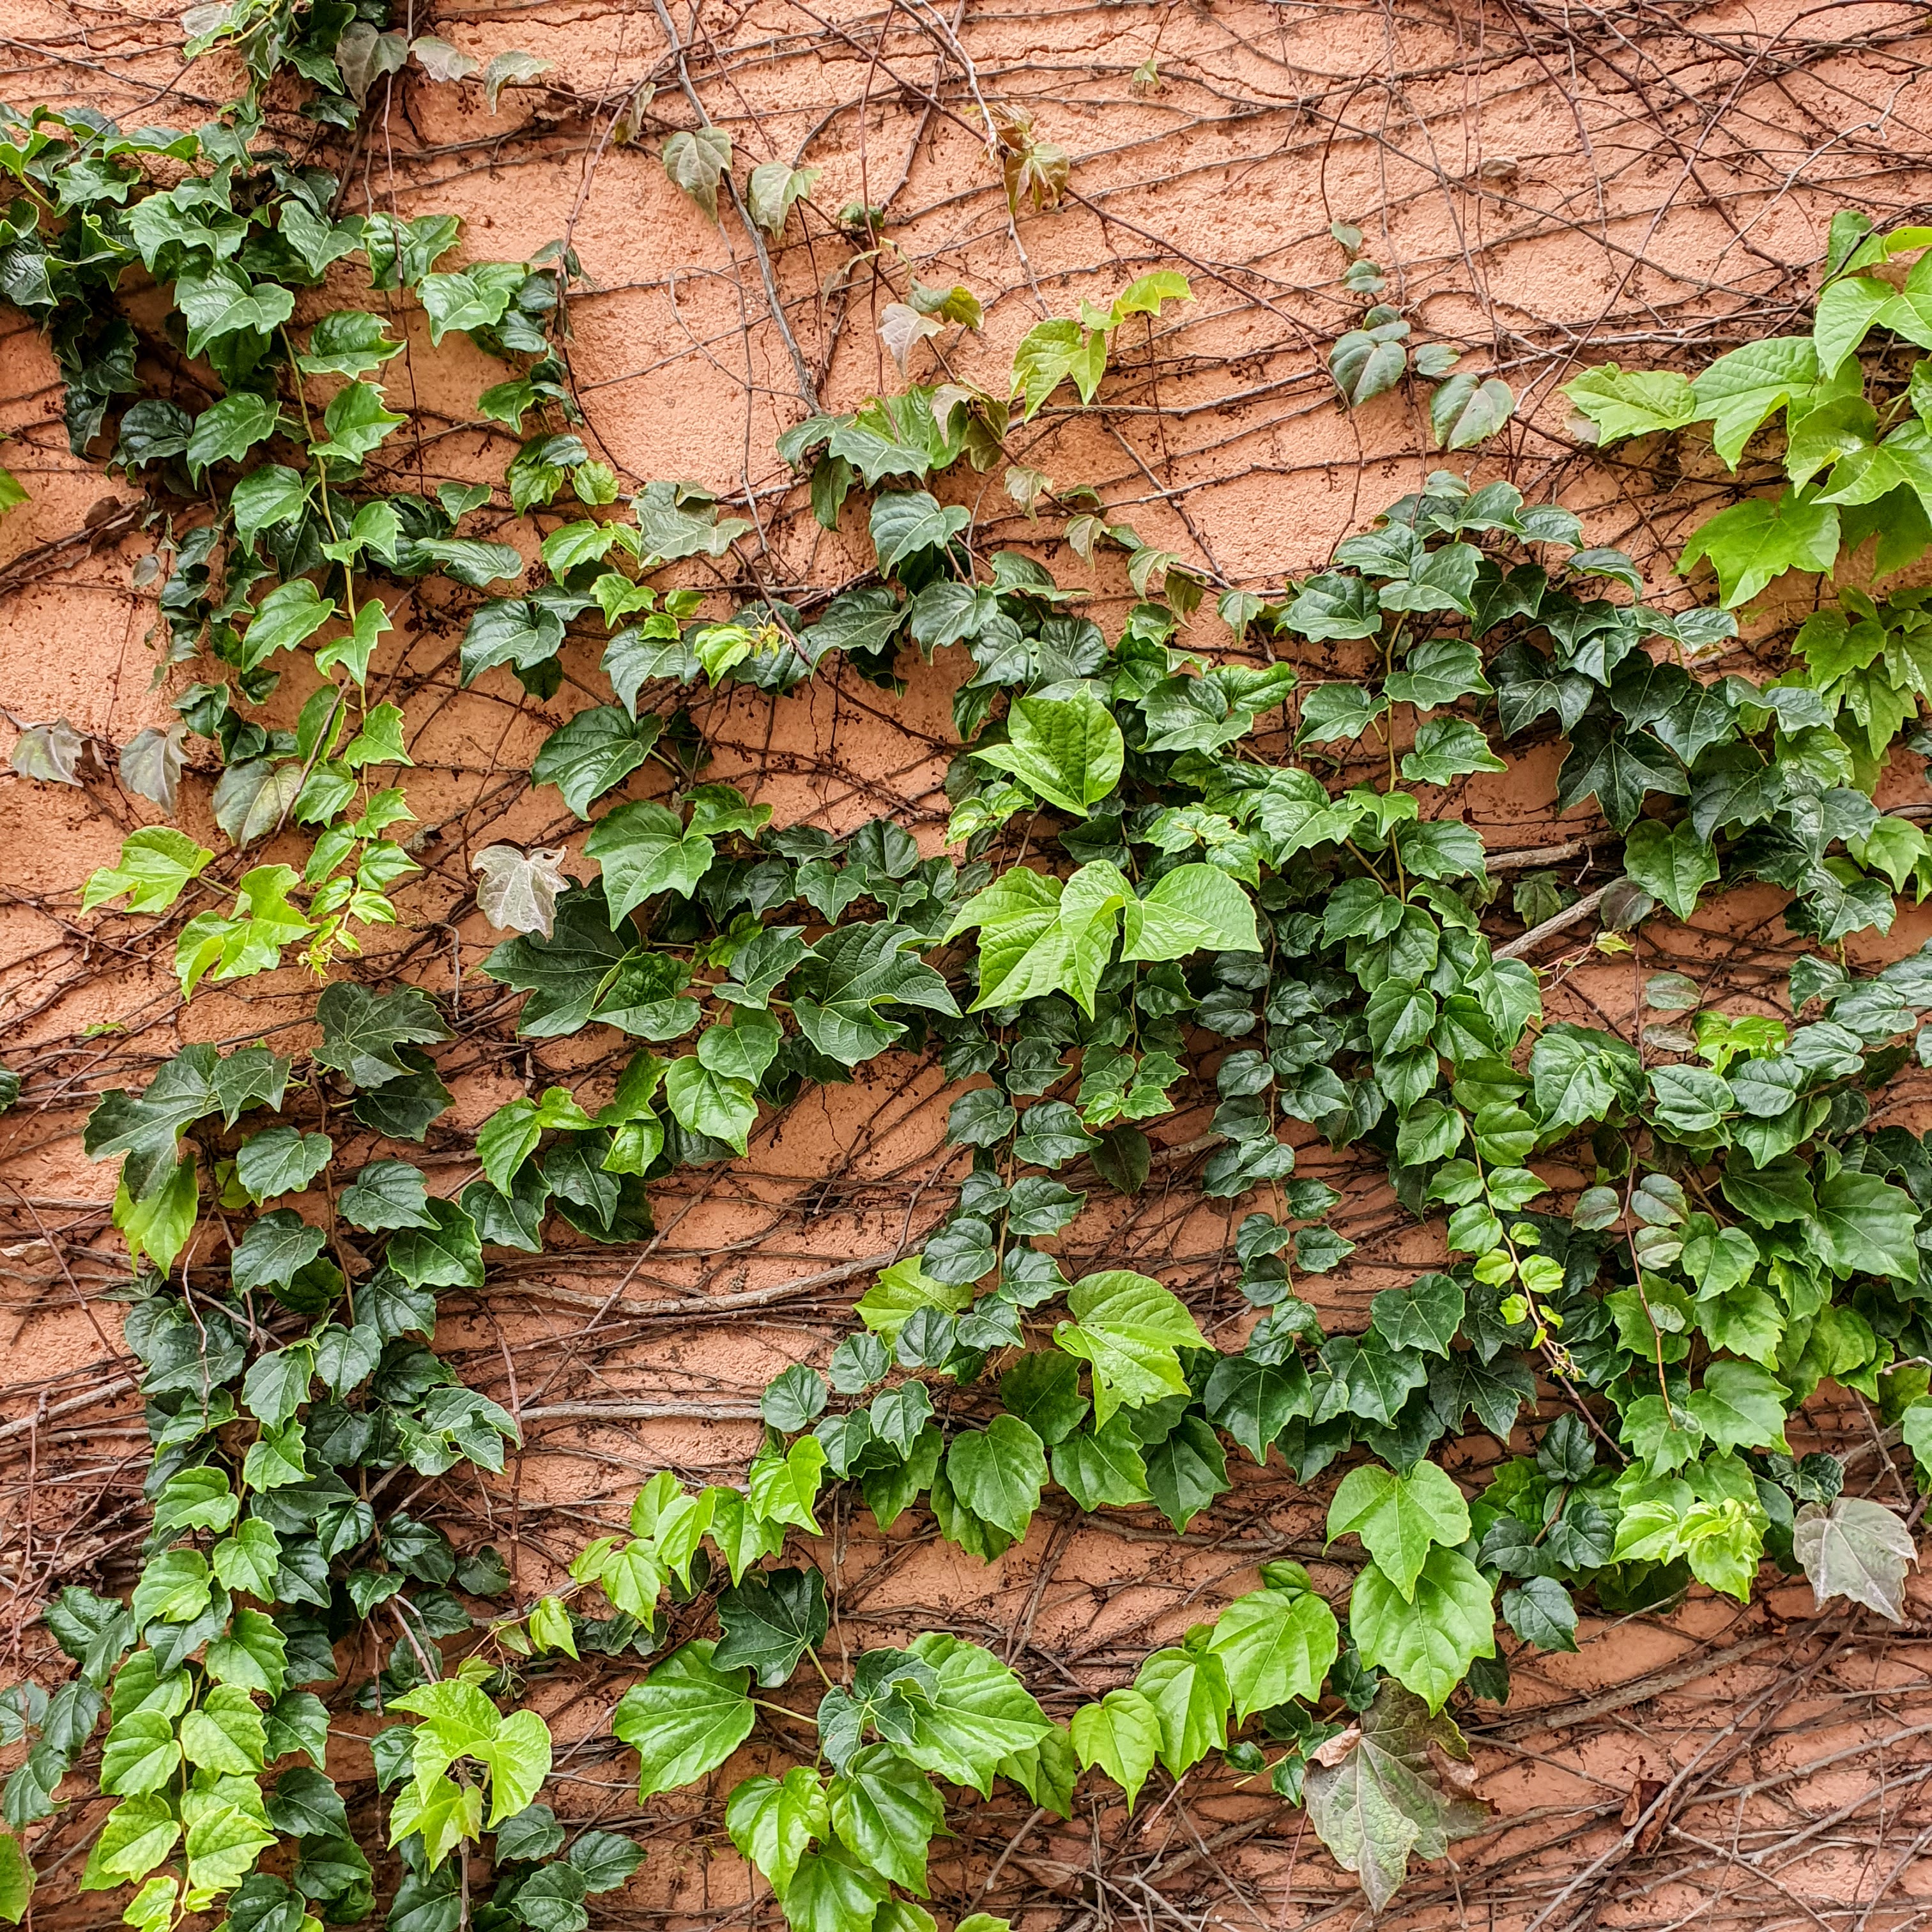 Detalhe das folhas lobadas e do padrão de crescimento da hera-da-argélia sobre as superfícies.